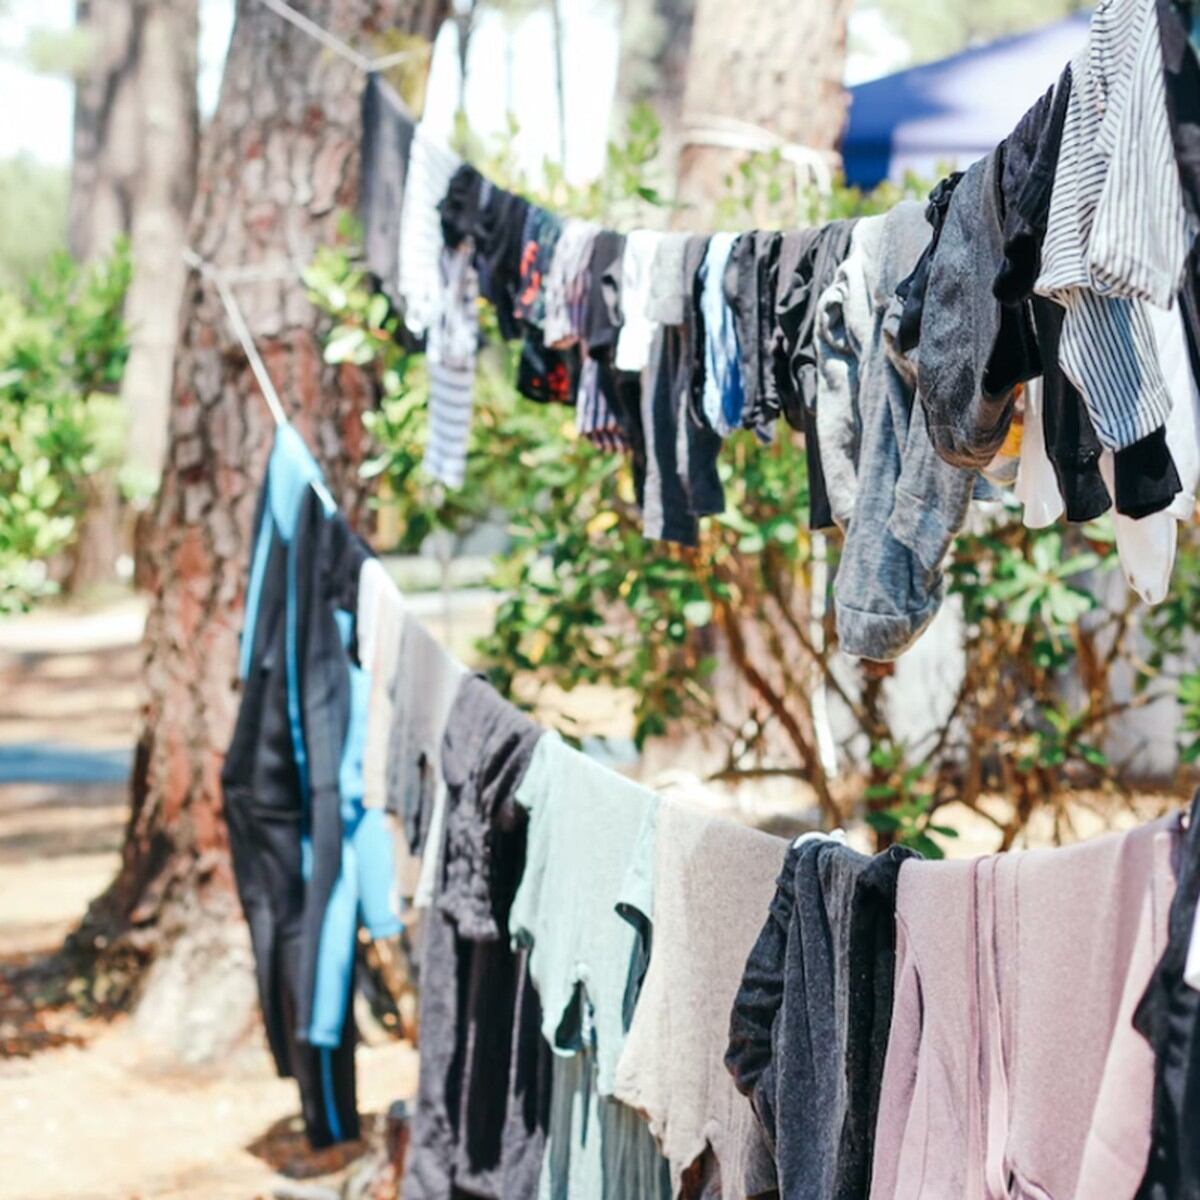 Cómo tender la ropa, consejos y trucos para conservar la ropa